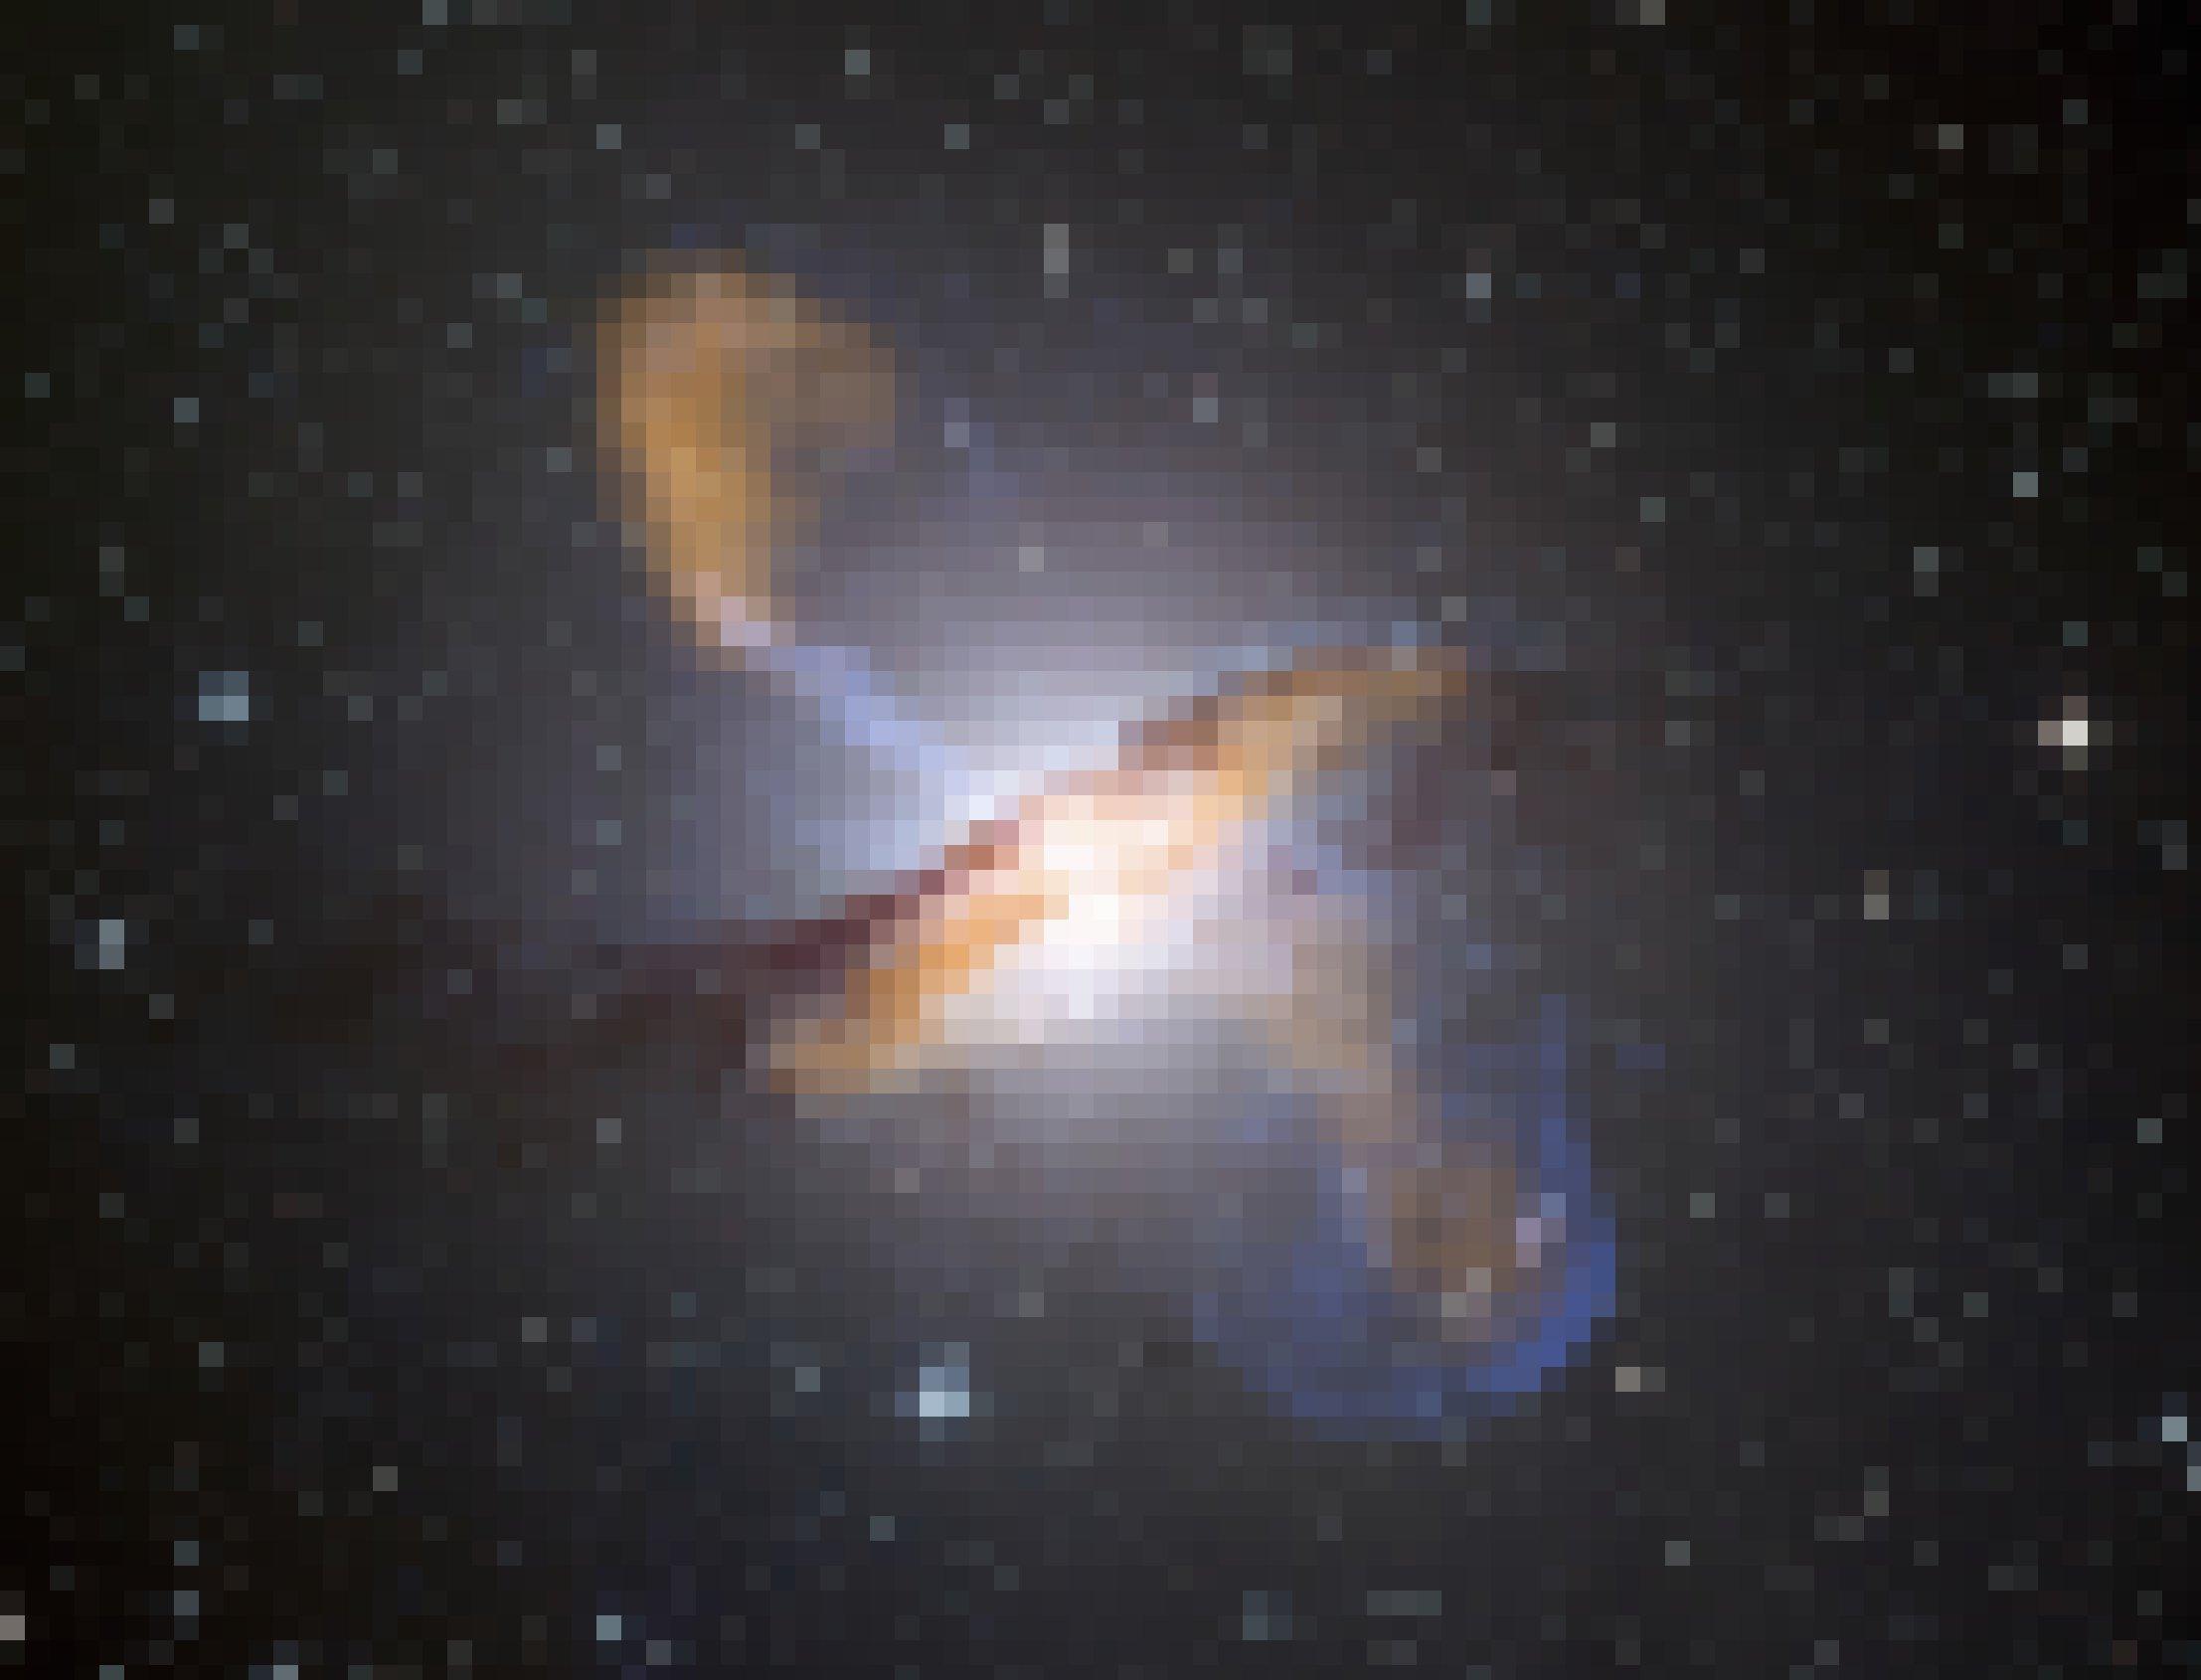 Foto der Galaxie „Centaurus A“, in deren Zentrum sich ein supermassives Schwarzes Loch befindet, das als Quasar weithin durchs All leuchtet